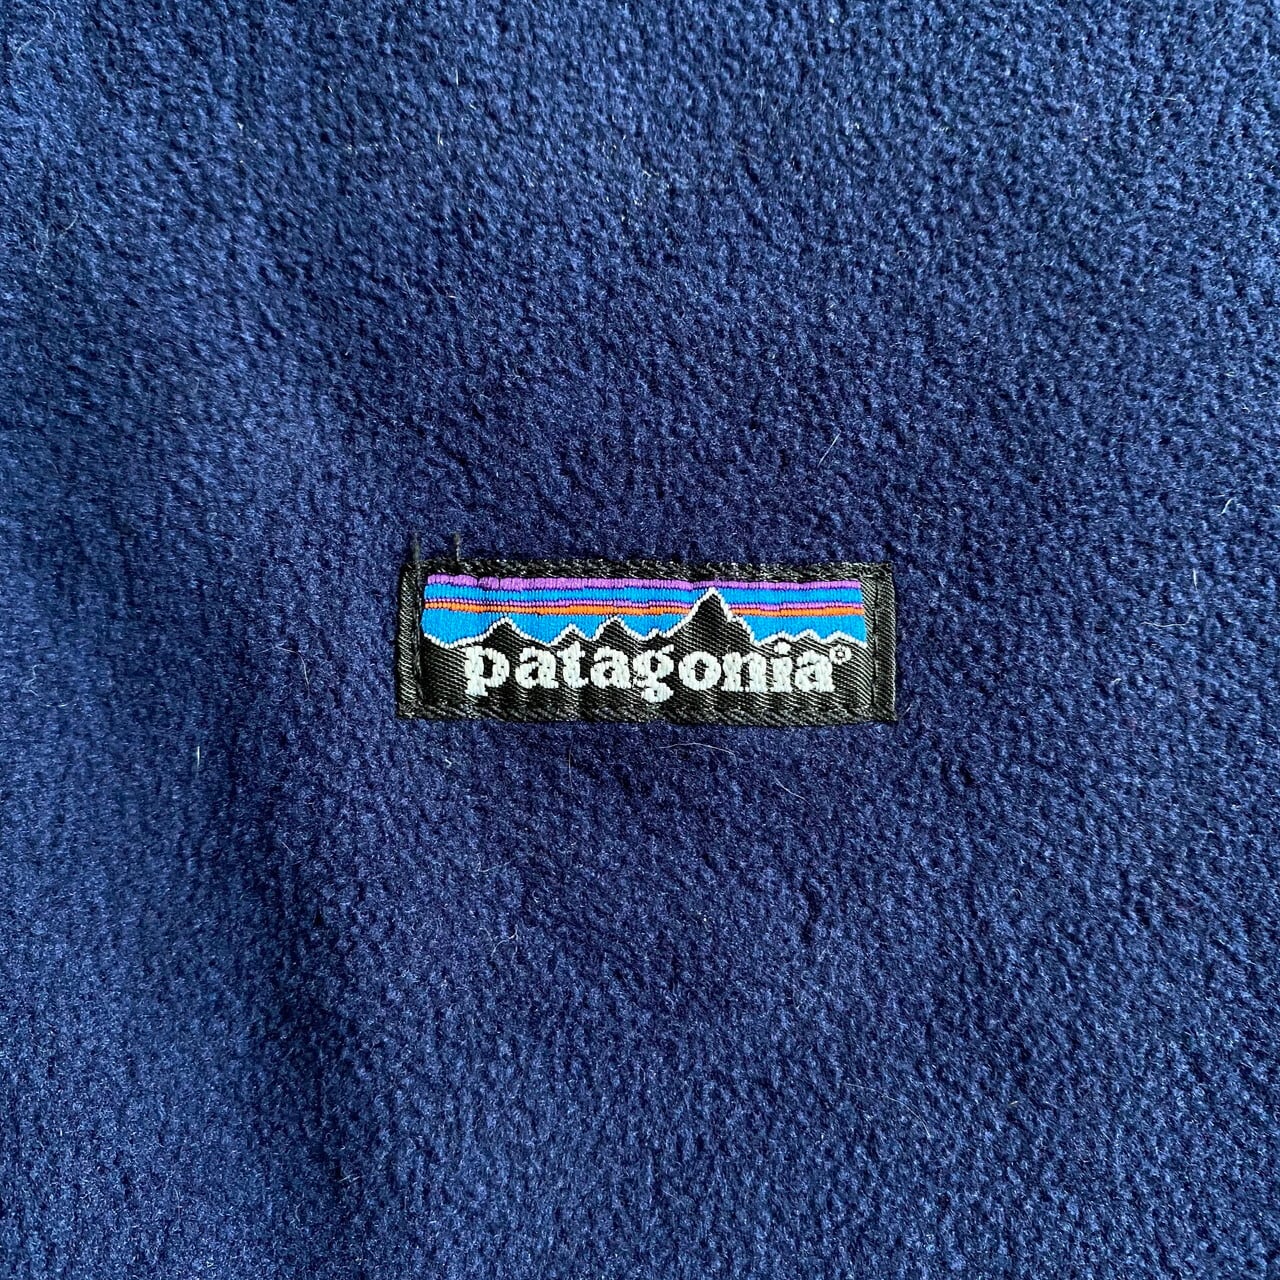 【良品】 patagonia パタゴニア シンチラ フルジップ USA 黒 L